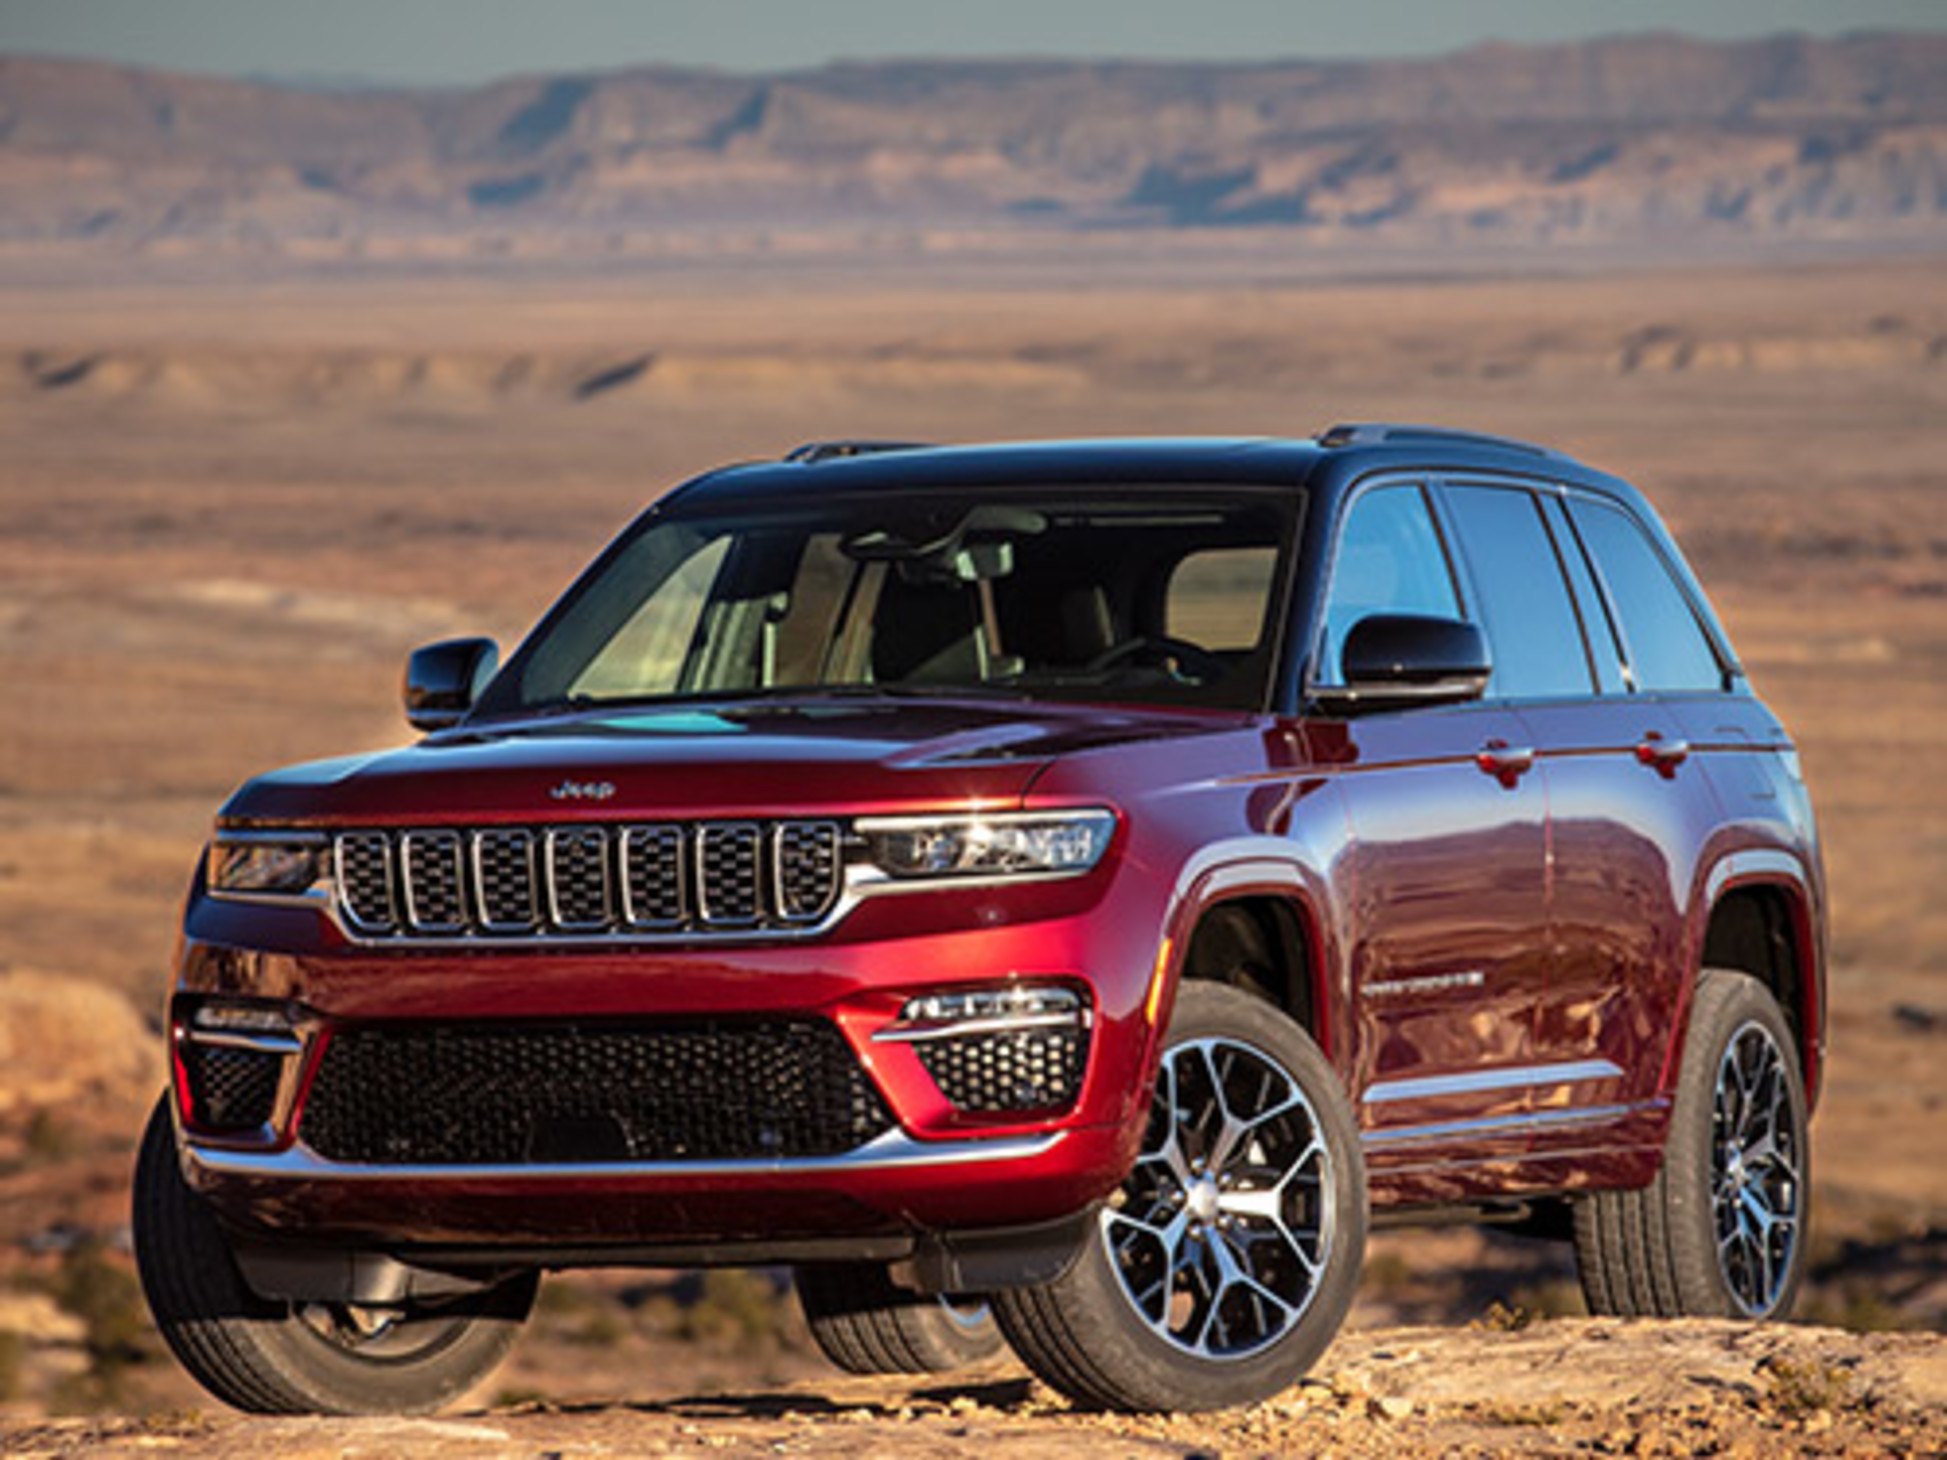 Jeep Grand Cherokee rouge 2023 garé au sommet d’une colline sur fond de désert.